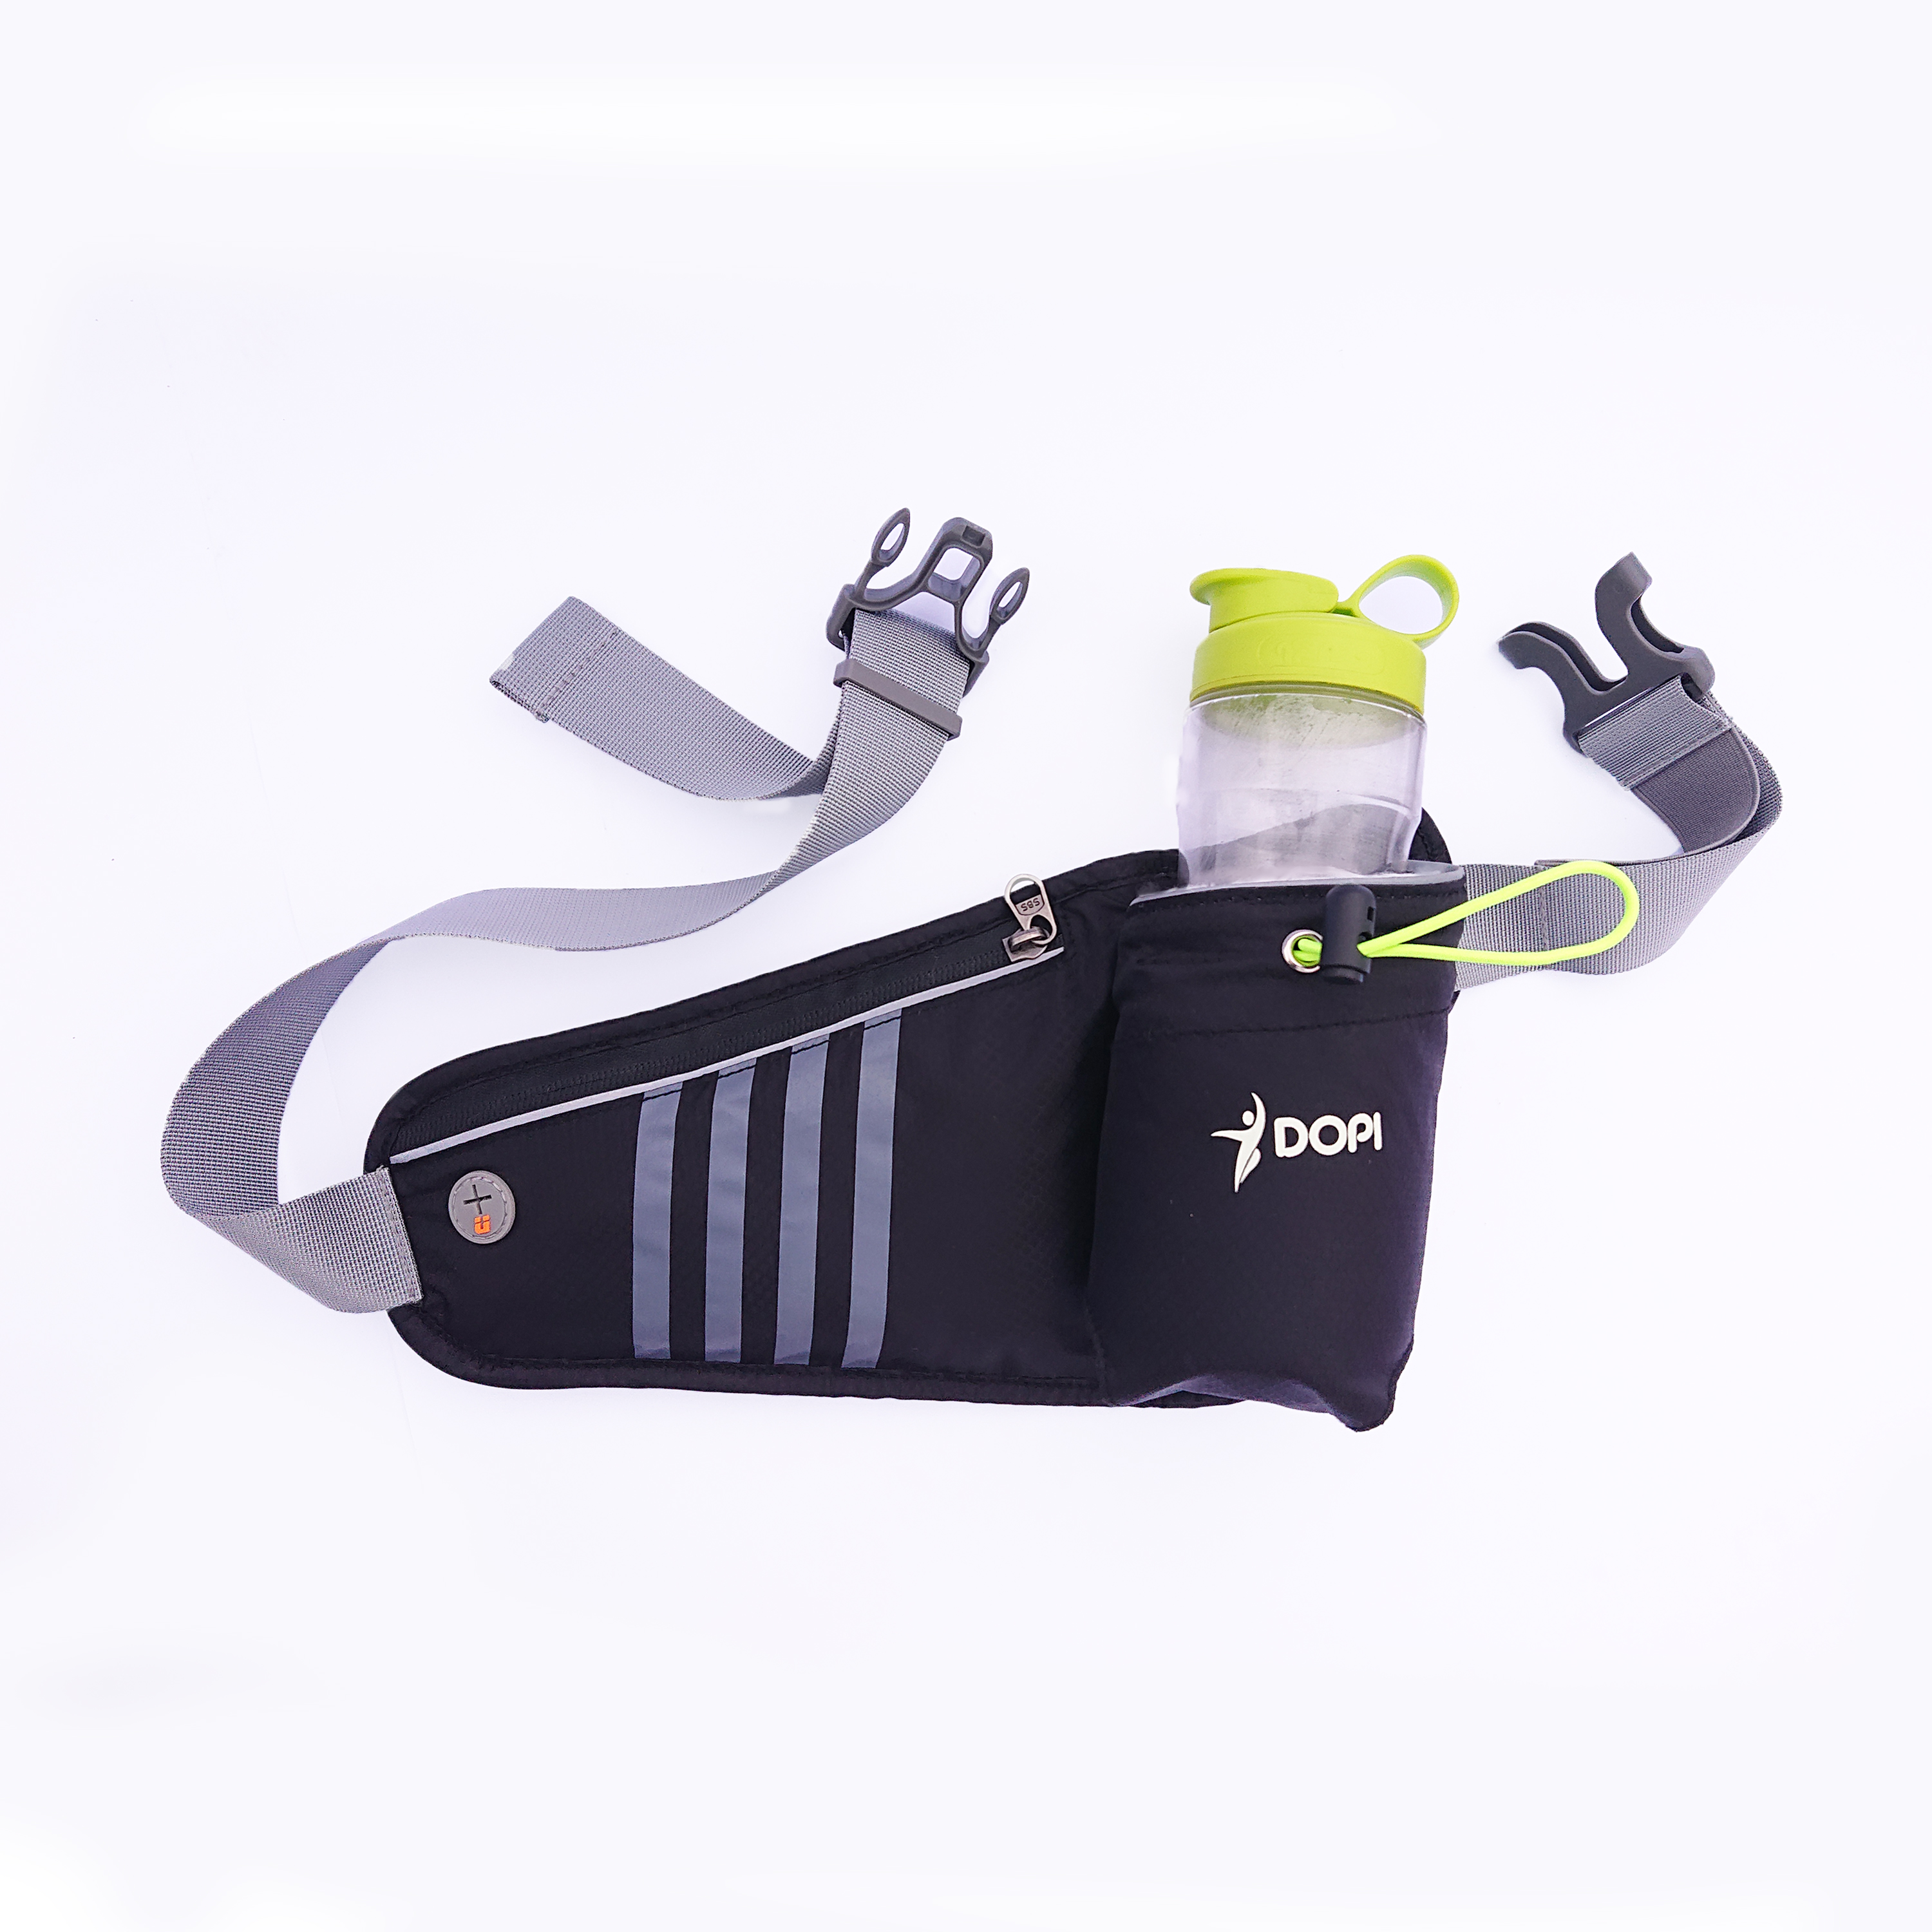 Túi đai đeo bụng hông chạy bộ phản quang DOPI360 có ngăn đựng bình nước DOPI12